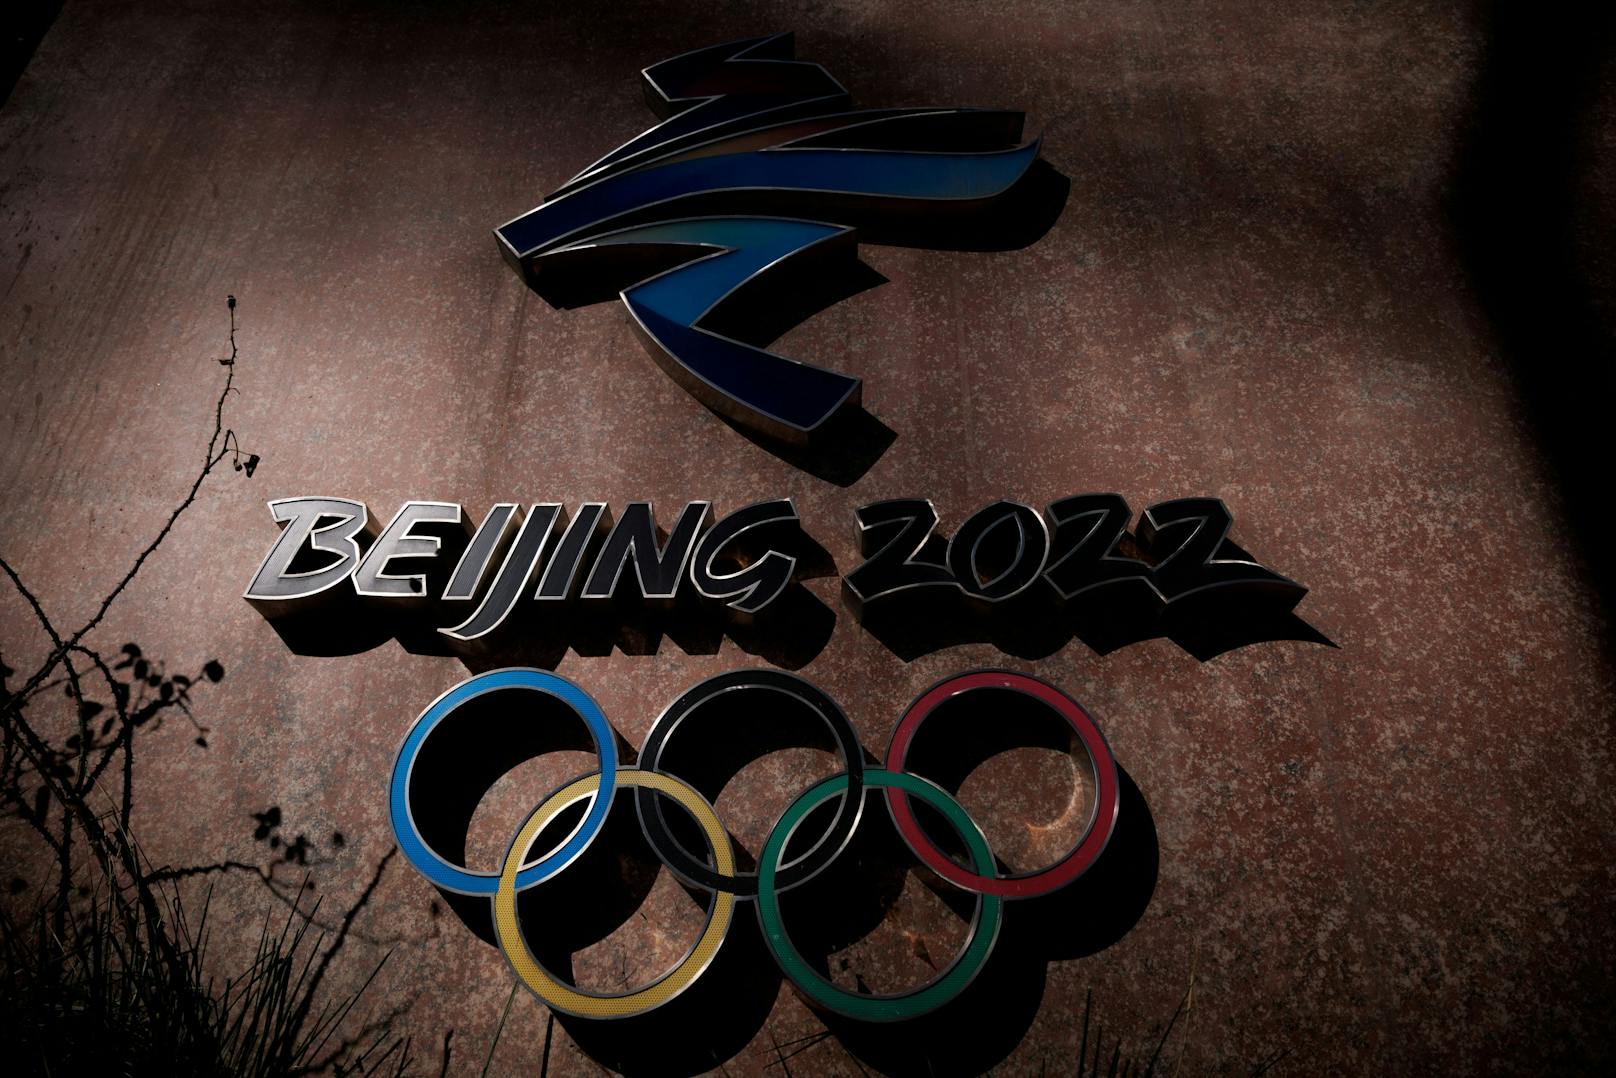 Immer mehr Länder schließen sich dem Boykott der Olympischen Winterspiele in Peking an. Jetzt überlegt Japan, keine diplomatischen Vertreter nach Peking zu schicken.